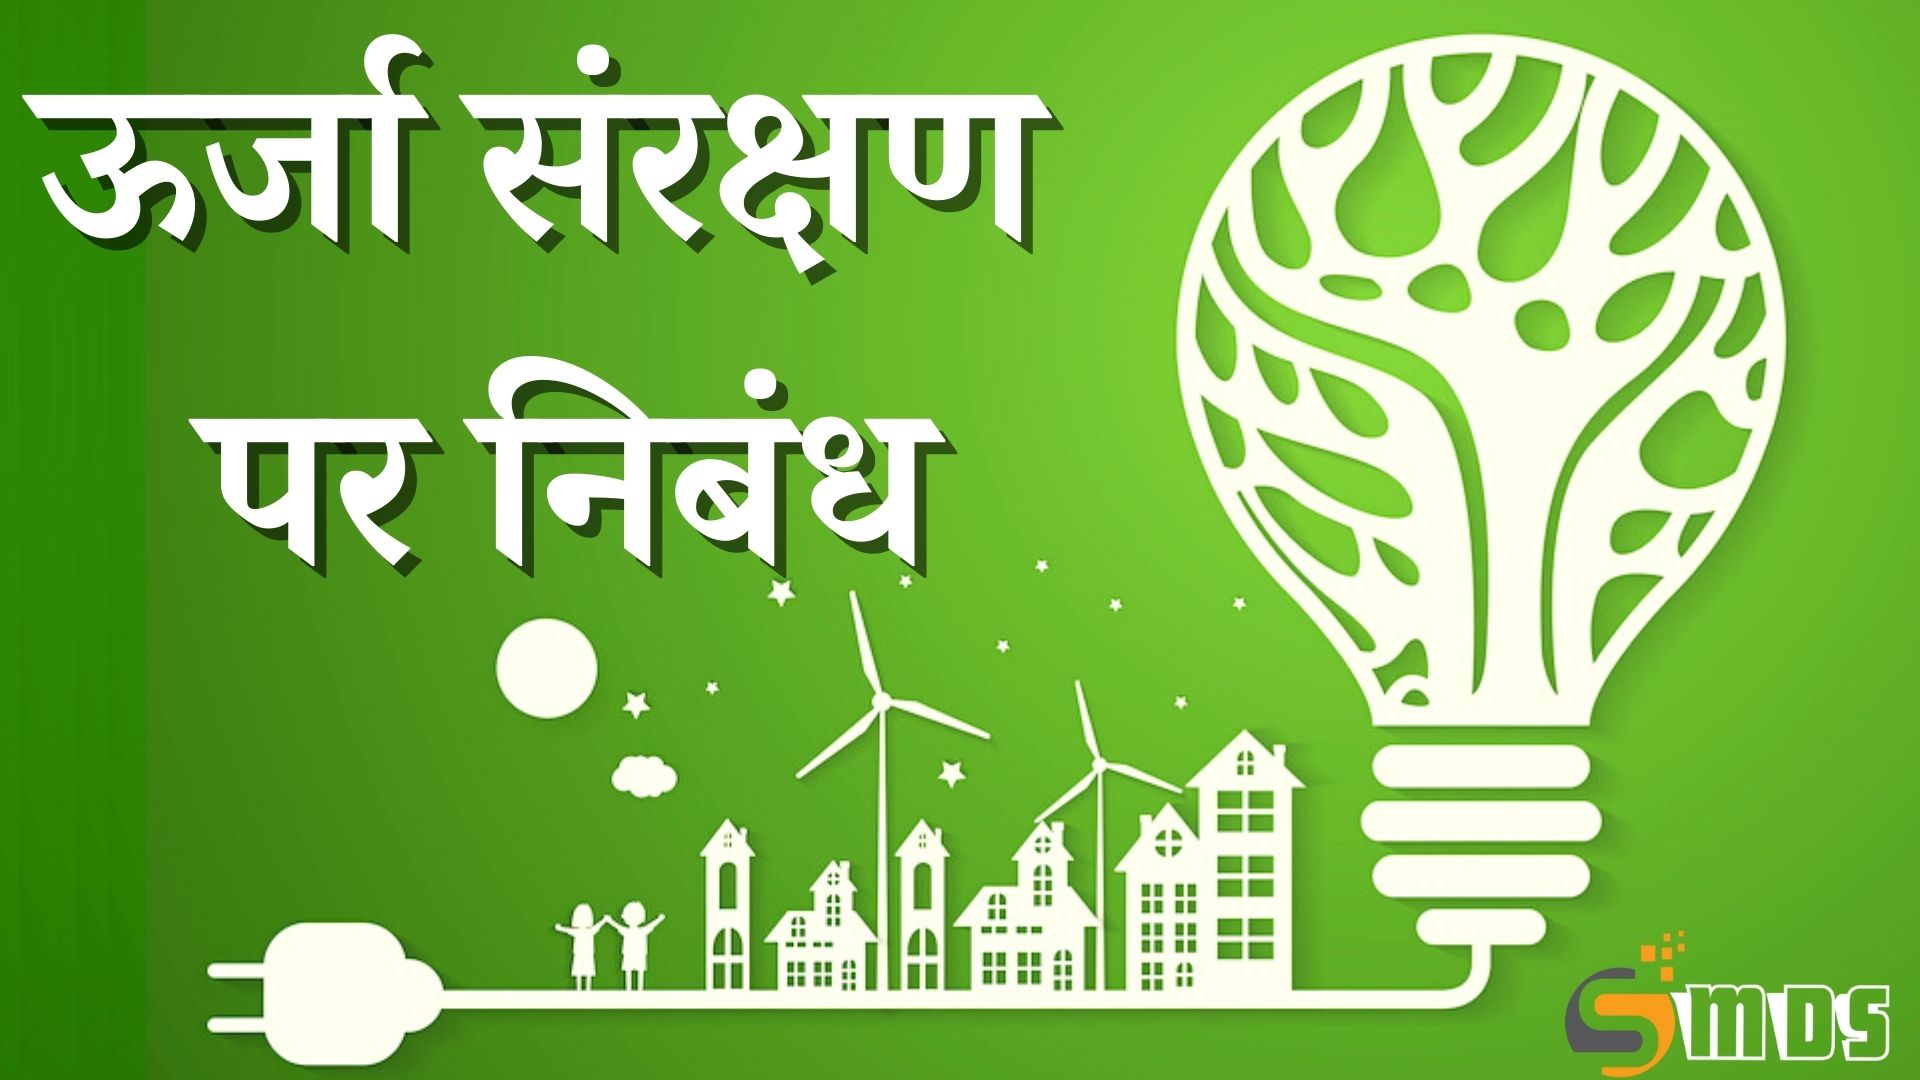 ऊर्जा संरक्षण पर निबंध, Energy Conservation Essay in Hindi, urja sanrakshan par nibandh, ऊर्जा संसाधन के महत्व पर प्रकाश डालिए